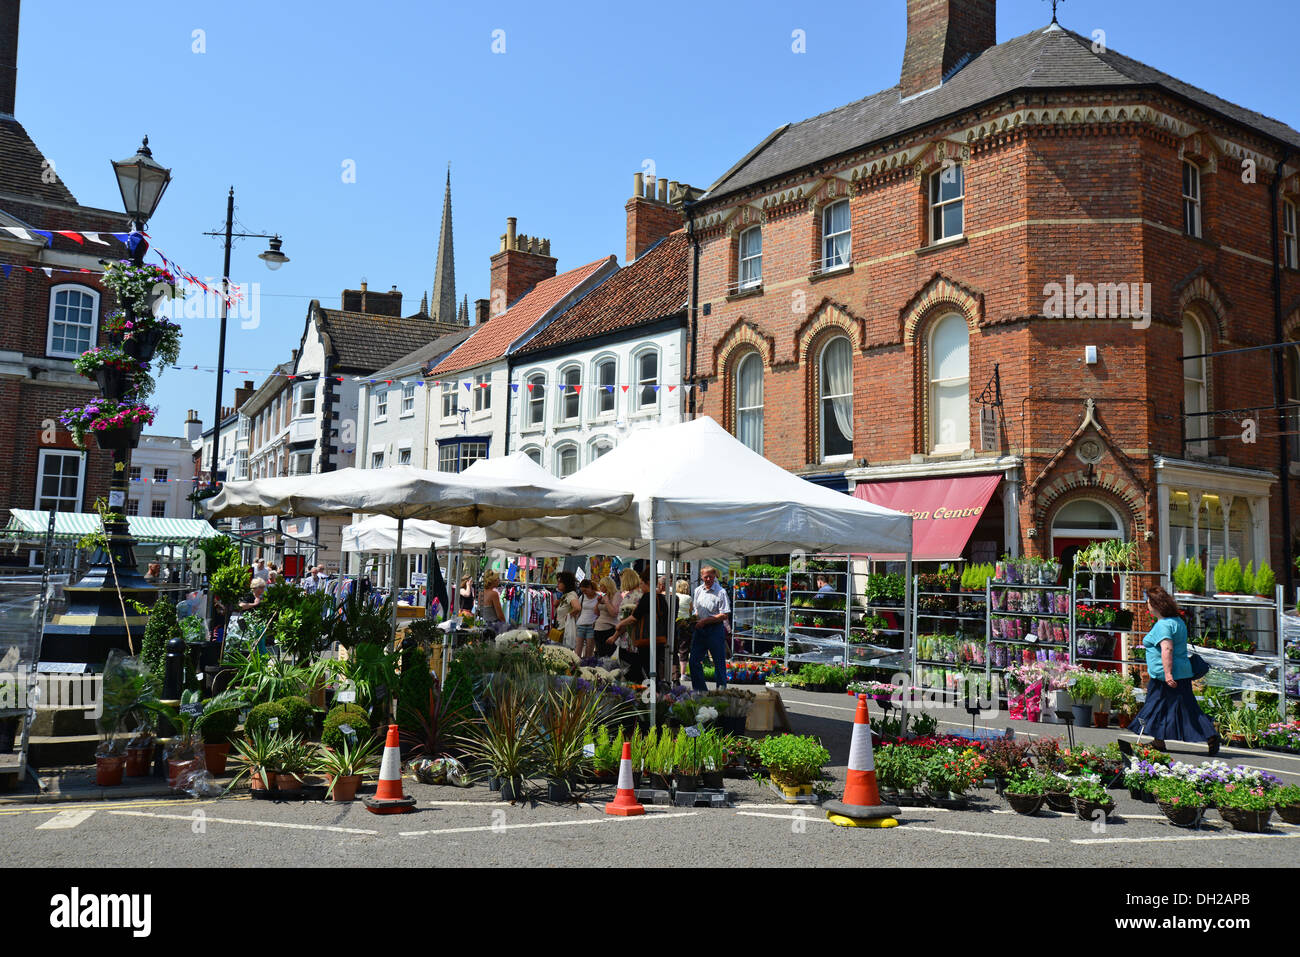 Markttag Stände im Marktplatz, Louth, Lincolnshire, England, Vereinigtes Königreich Stockfoto